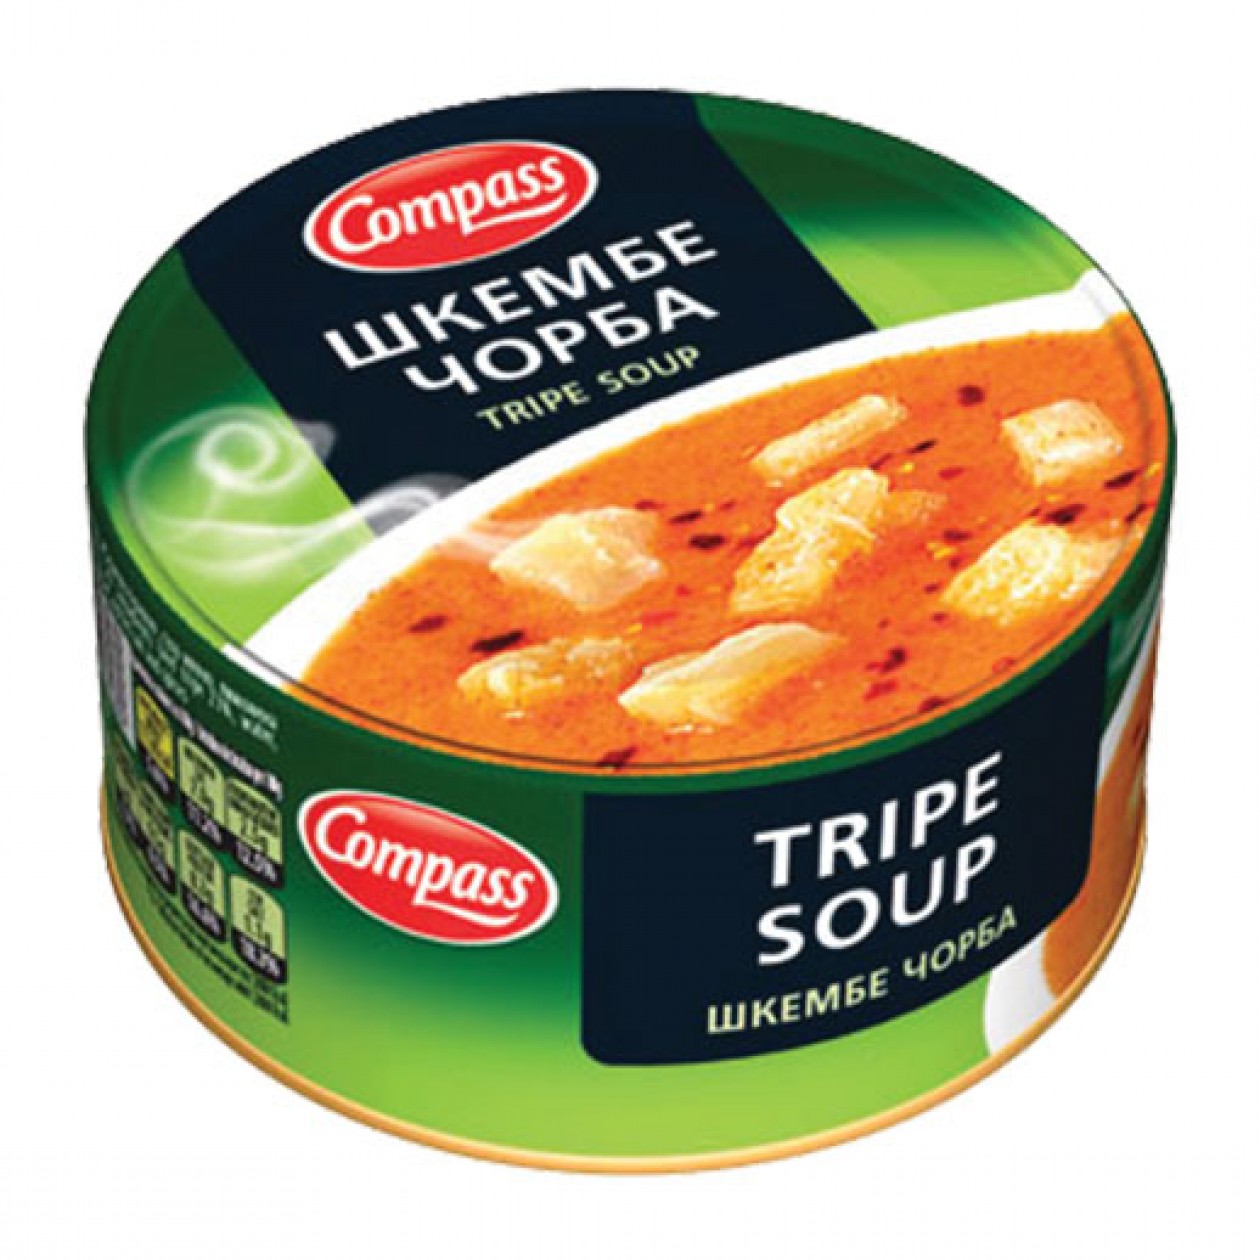 Compass Tripe Soup 300g